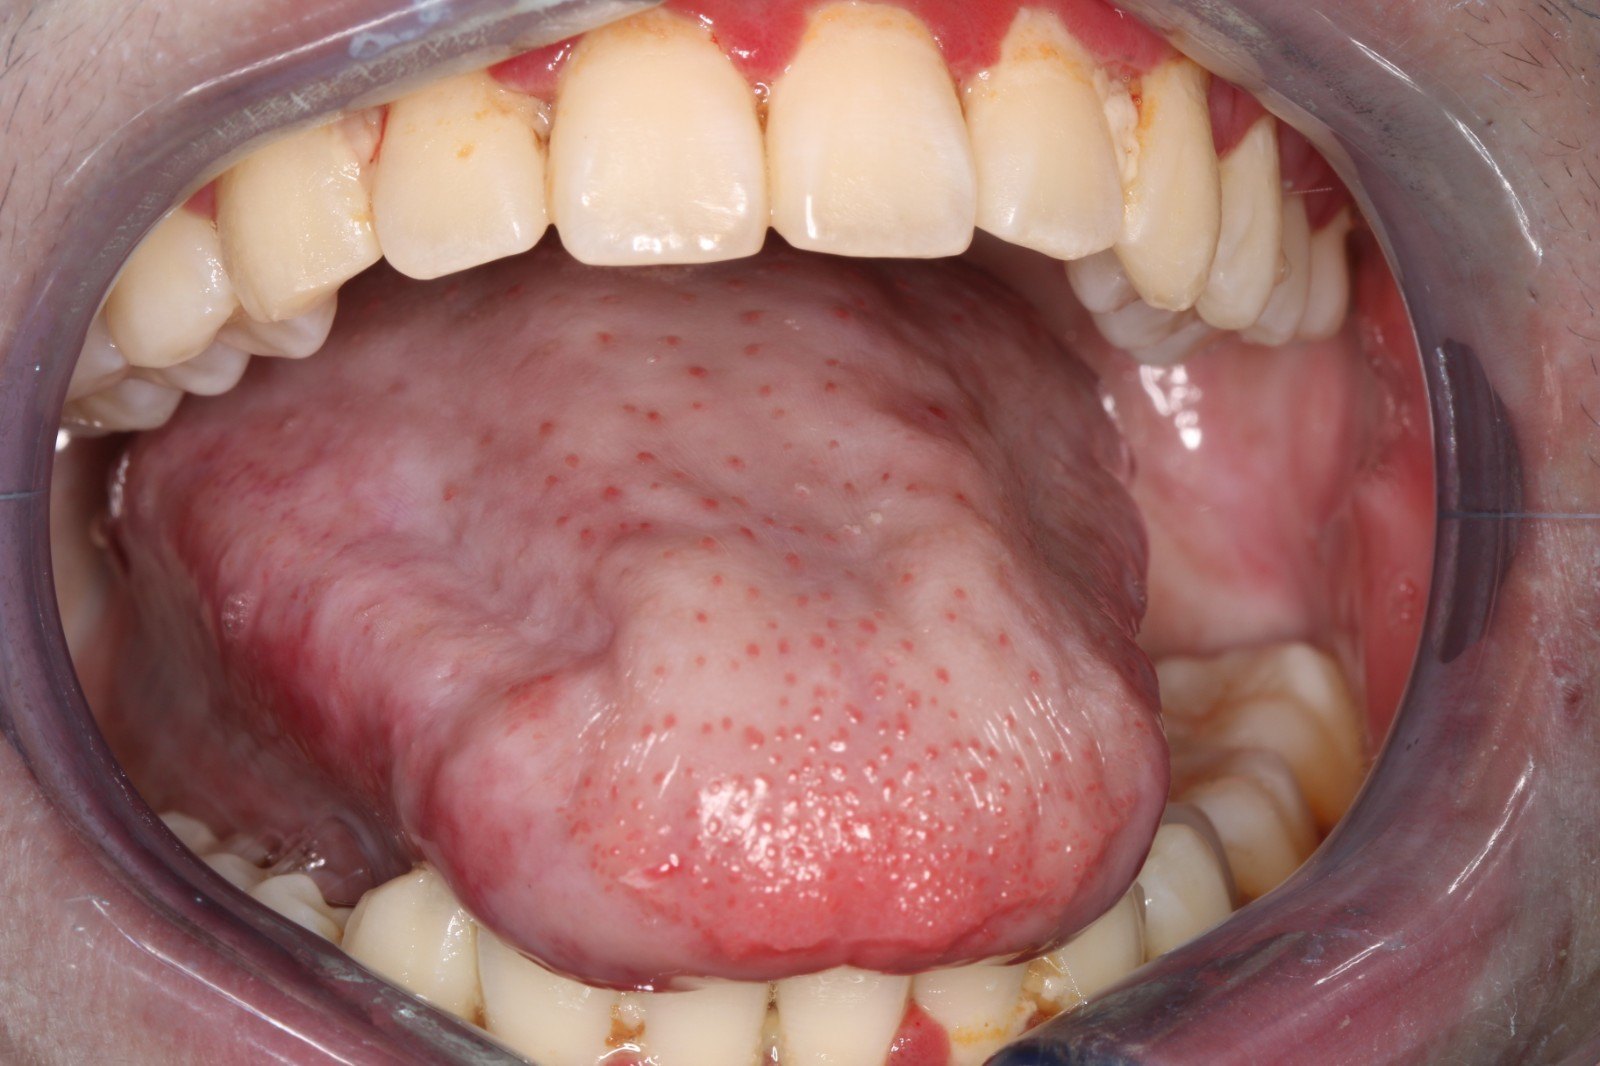 图2腭部黏膜osf图1颊黏膜osfosf患者的一般临床表现是口腔黏膜的大片